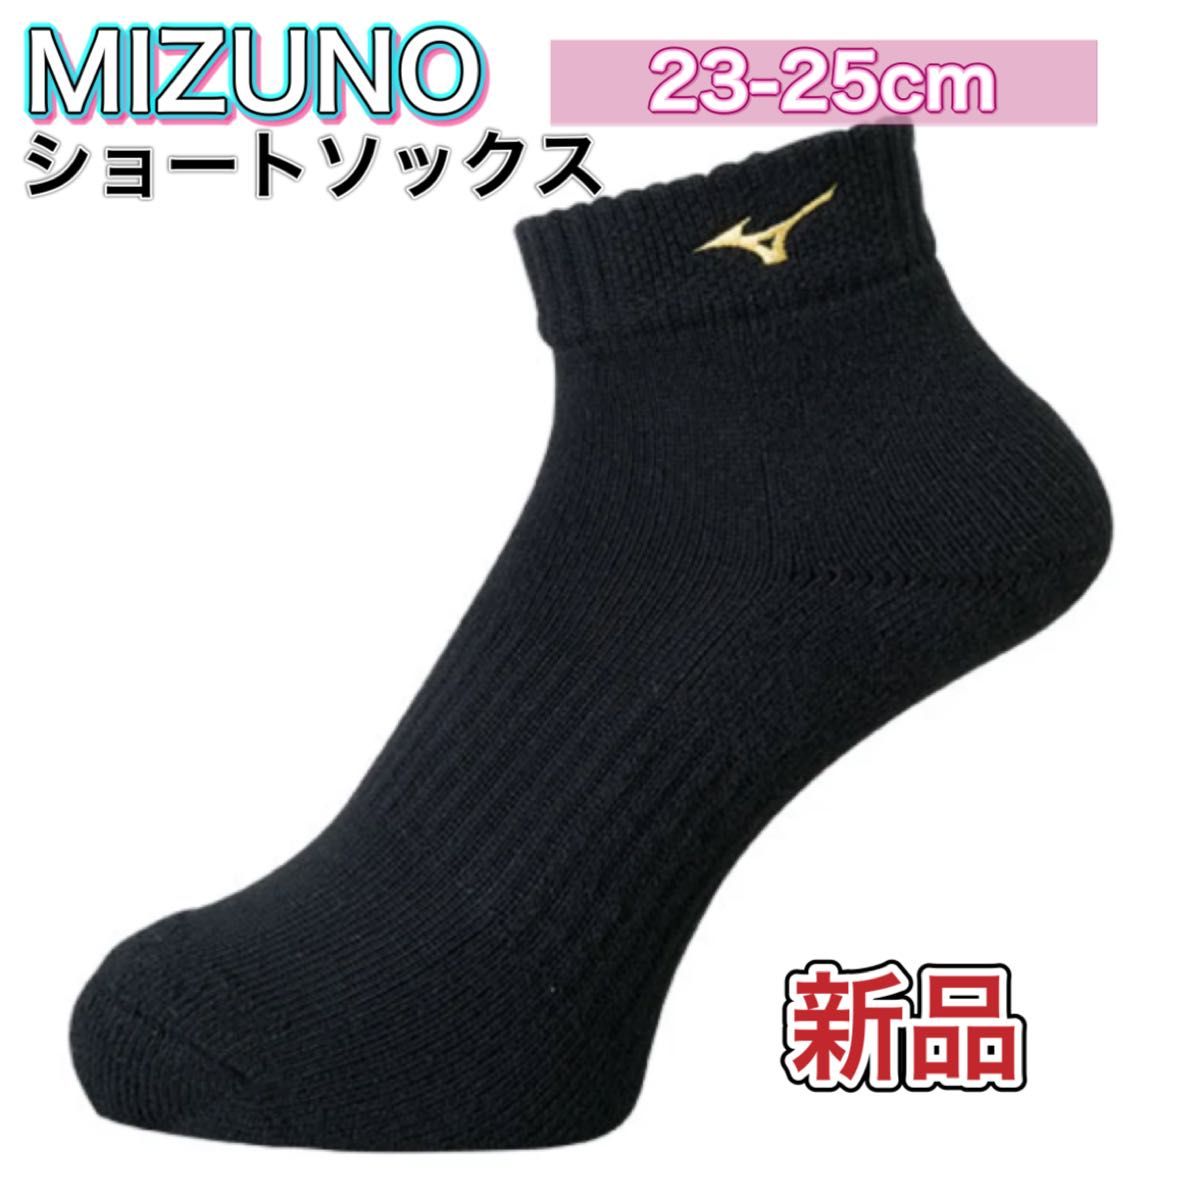 MIZUNO ミズノ ショートソックス 23-25cm ブラック×ゴールド